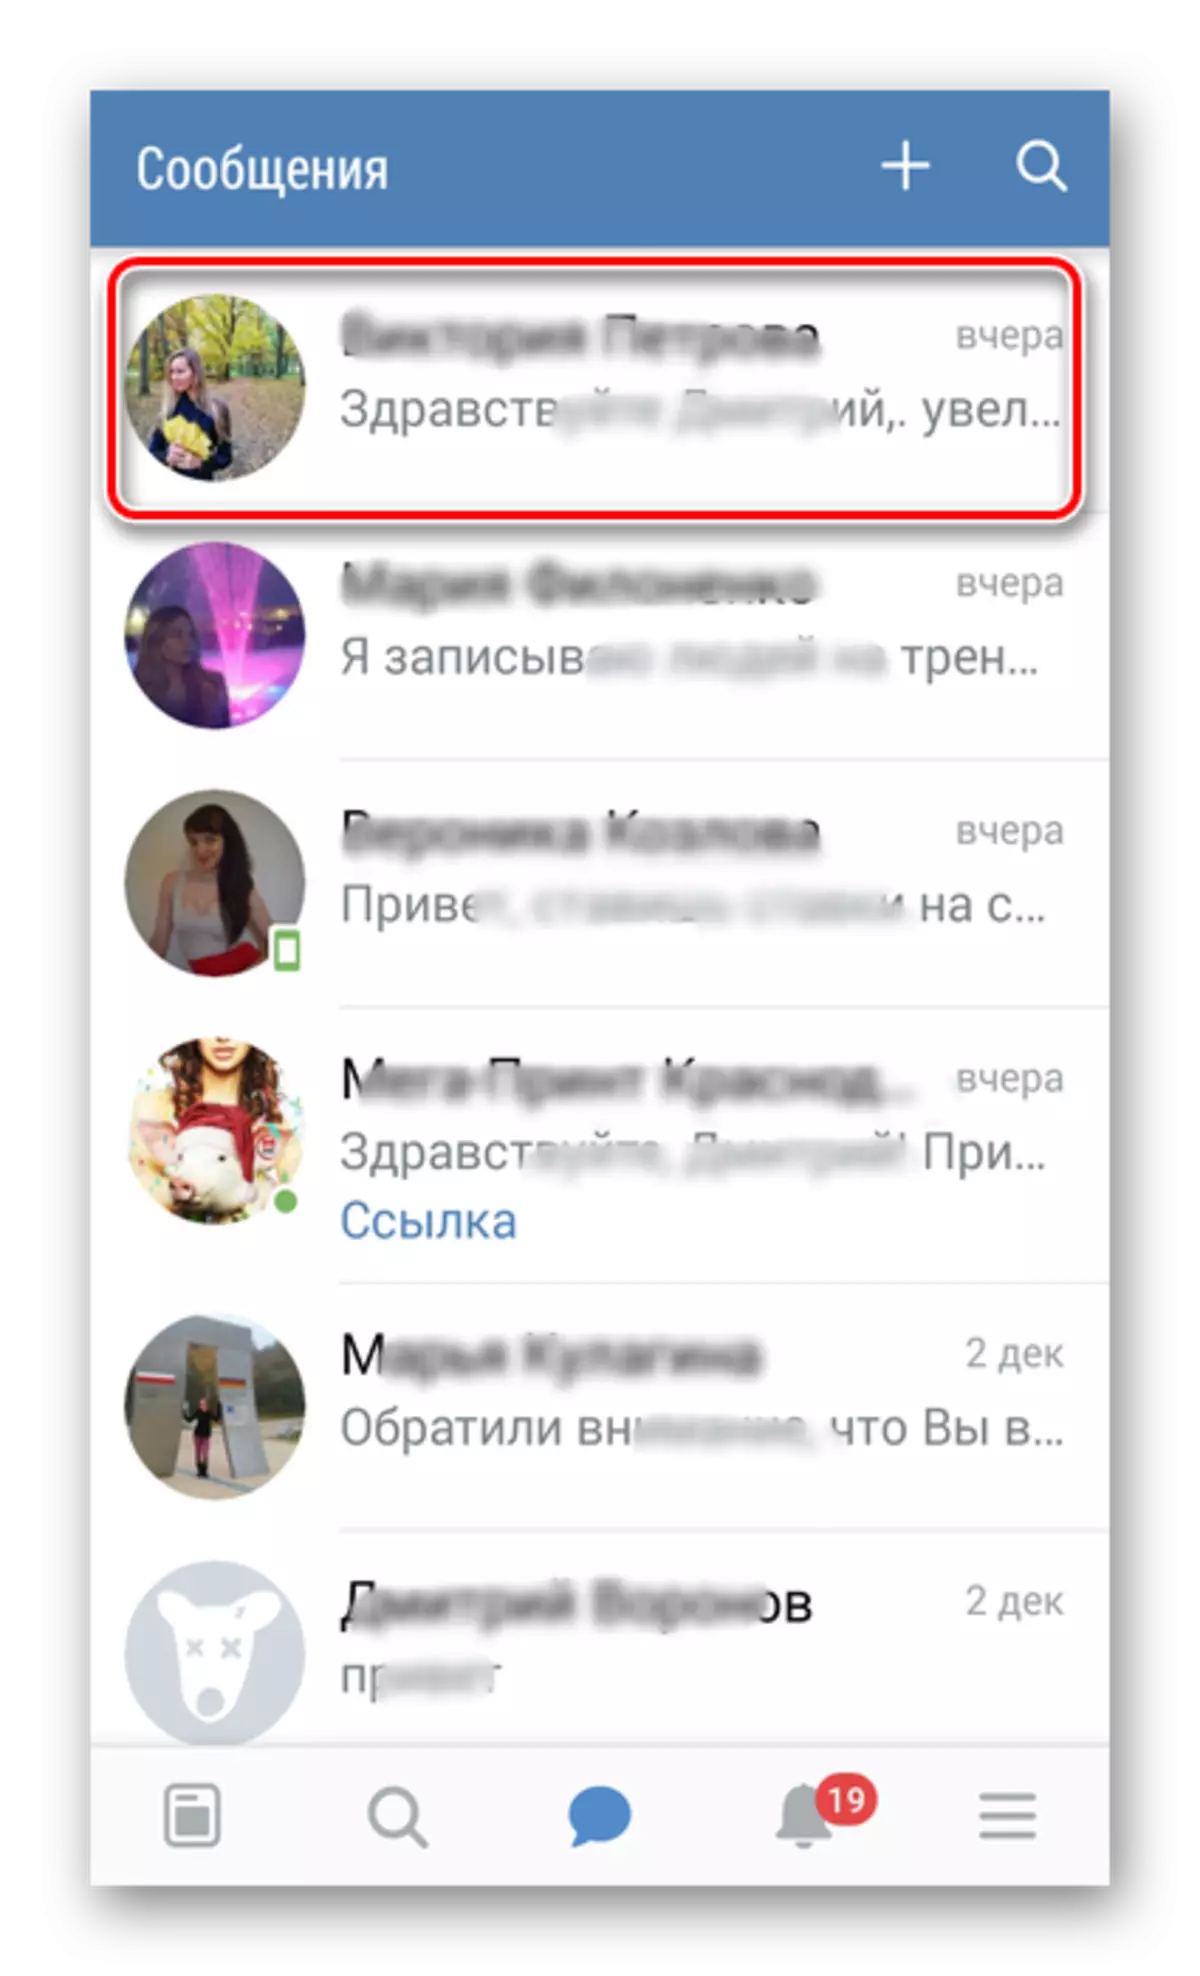 Vkontakte-д яриа руу шилжих